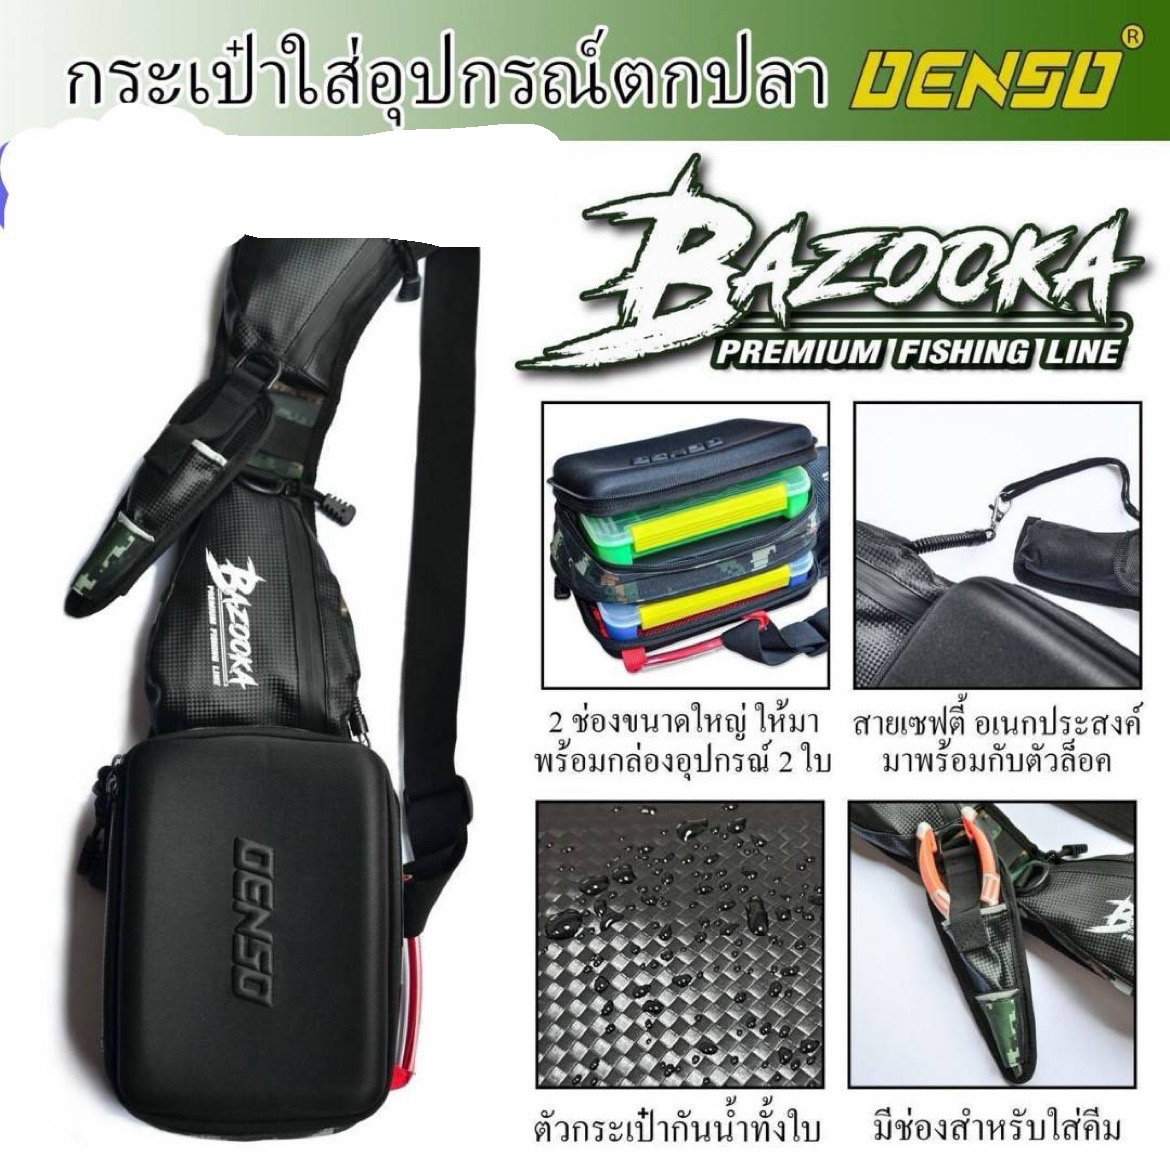 กระเป๋าใส่อุปกรณ์ตกปลา DENSO BAZOOKA